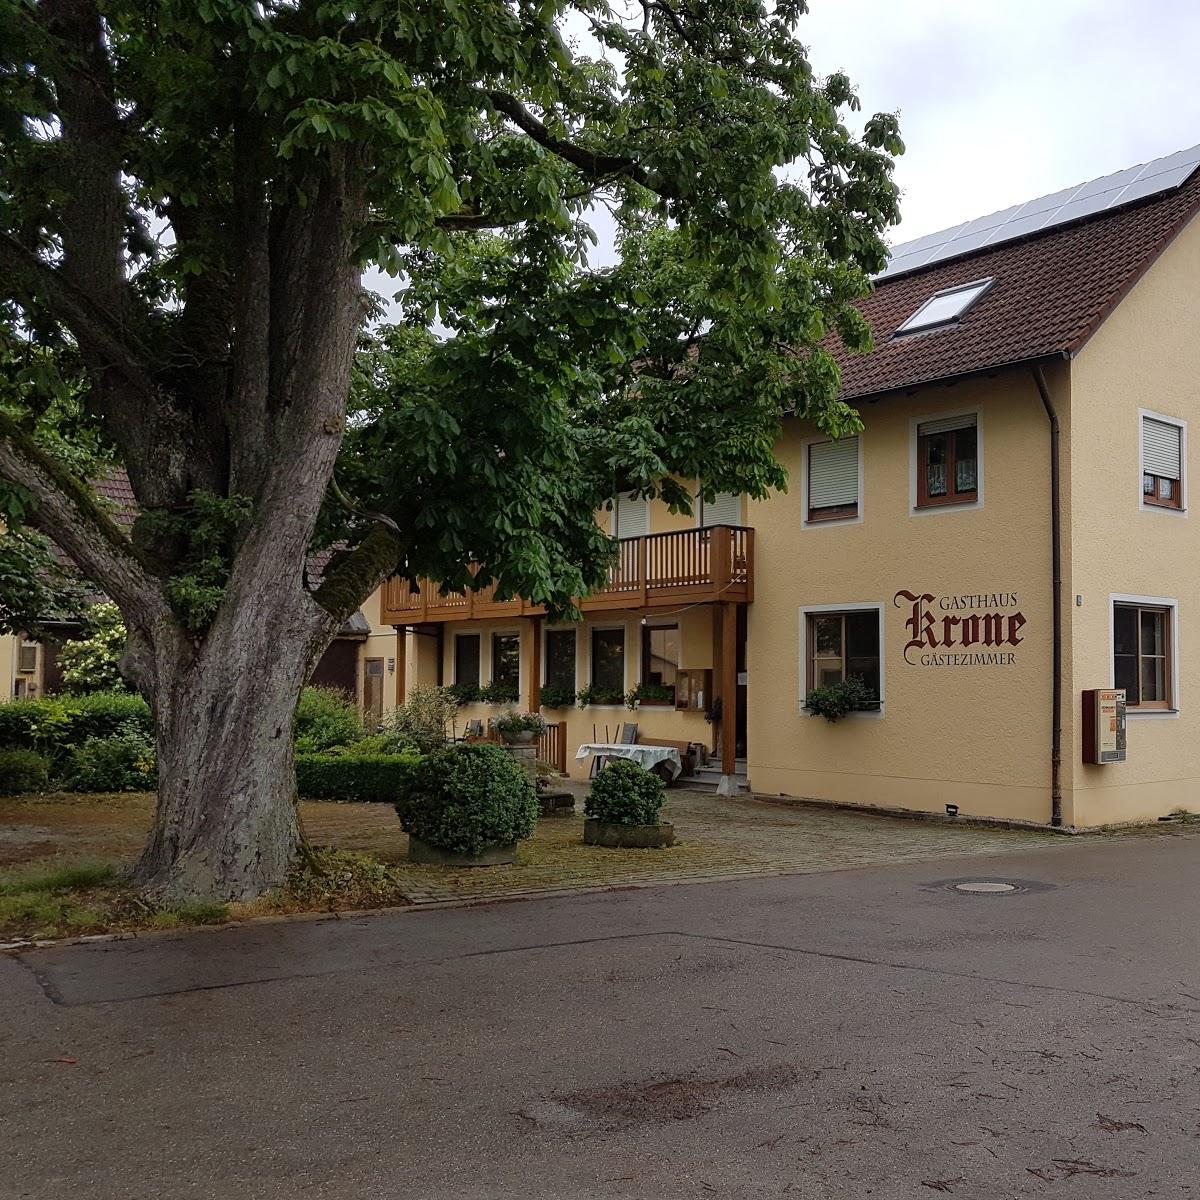 Restaurant "Gasthof krone" in  Schnelldorf